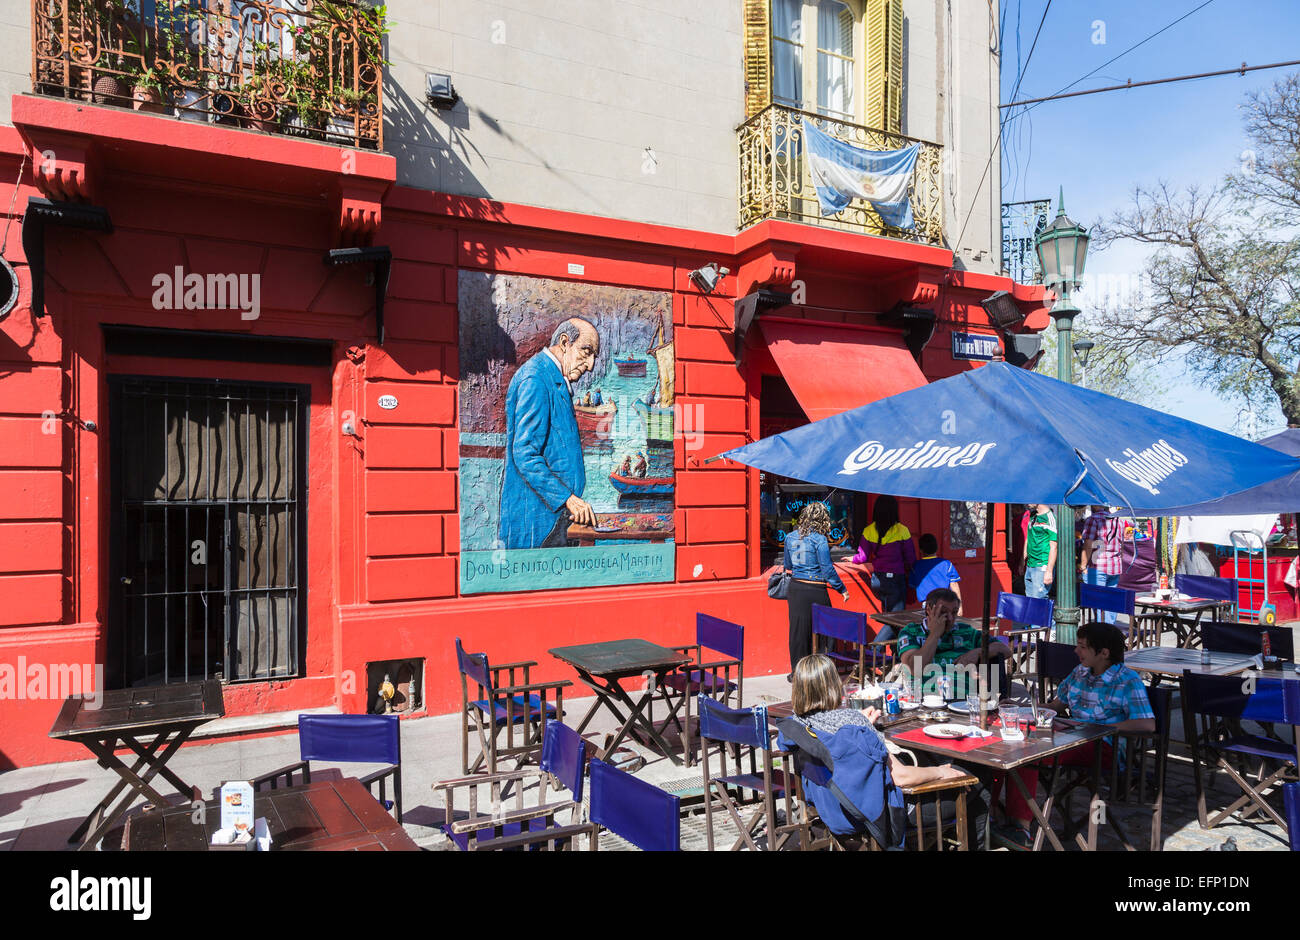 Murale colorée affiche à l'extérieur d'un restaurant en bordure de l'artiste représentant Don Benito Quinquela Martin peinture, la Boca, Buenos Aires, Argentine Banque D'Images